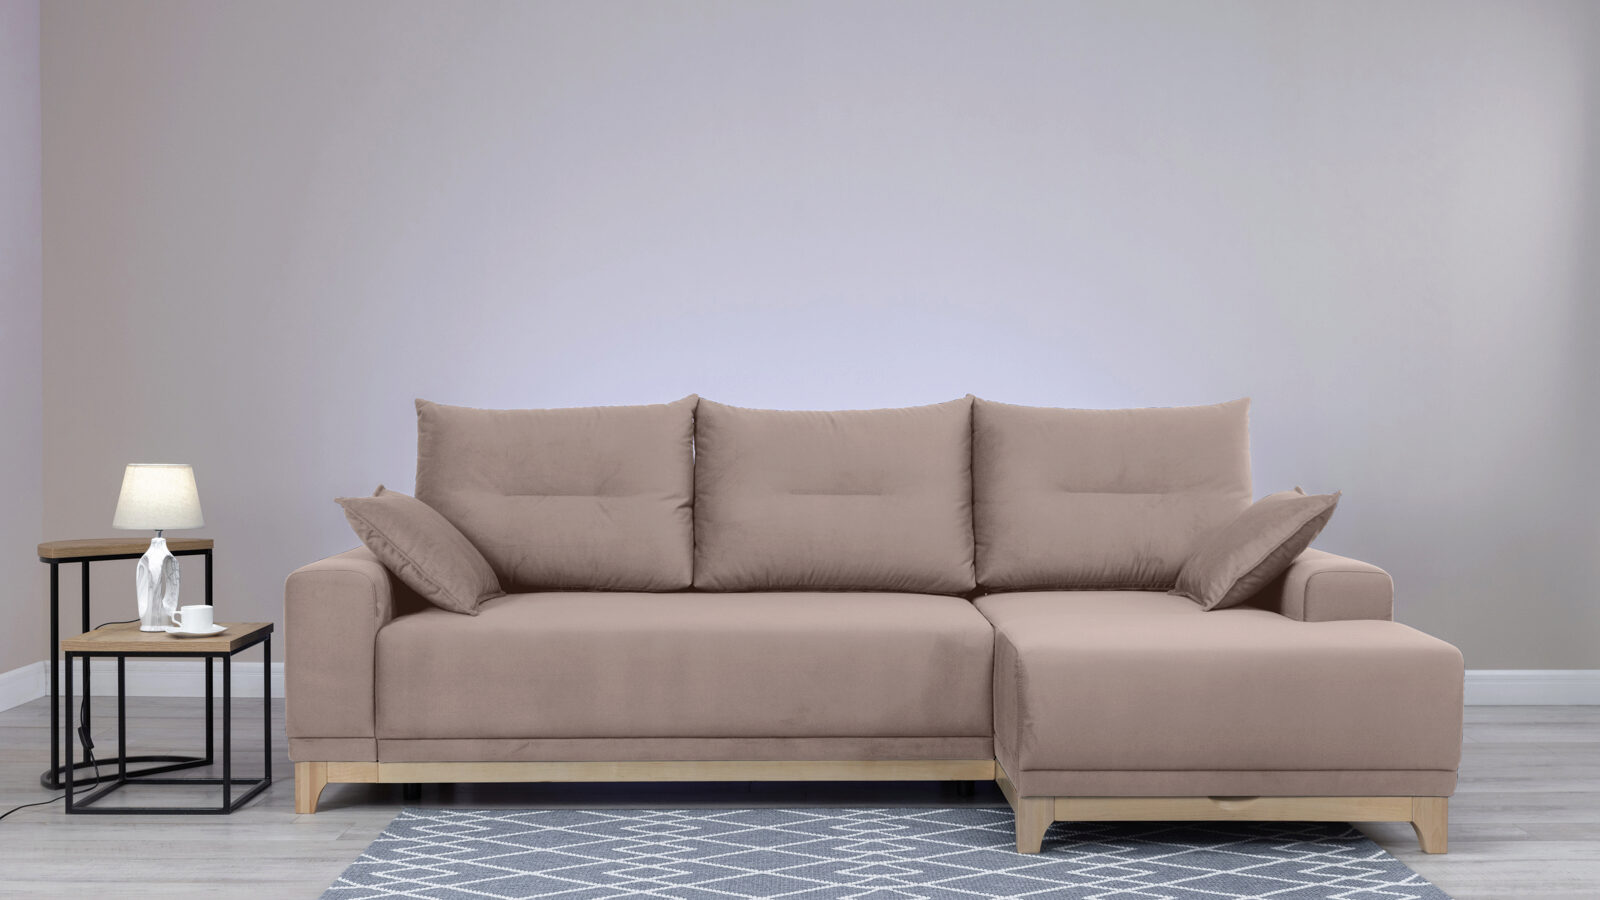 Угловой диван Frost new, правый угловой стол правый угол 1150 × 1100 × 780 мм карамель